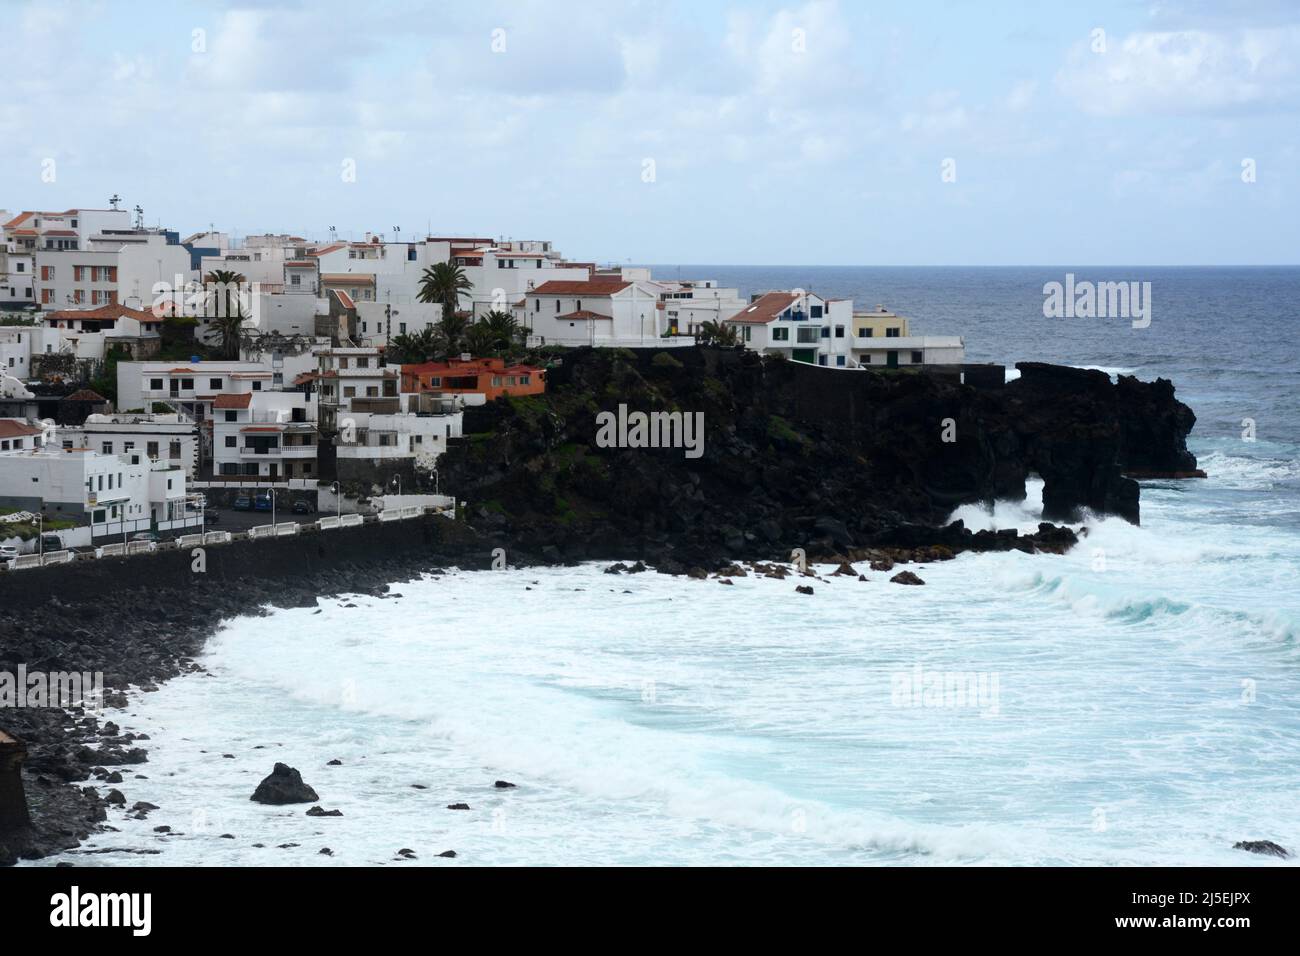 Casas encaladas en la zona de Las Aguas, en el pueblo de San Juan de la Rambla, en la costa atlántica norte de Tenerife, Islas Canarias, España. Foto de stock